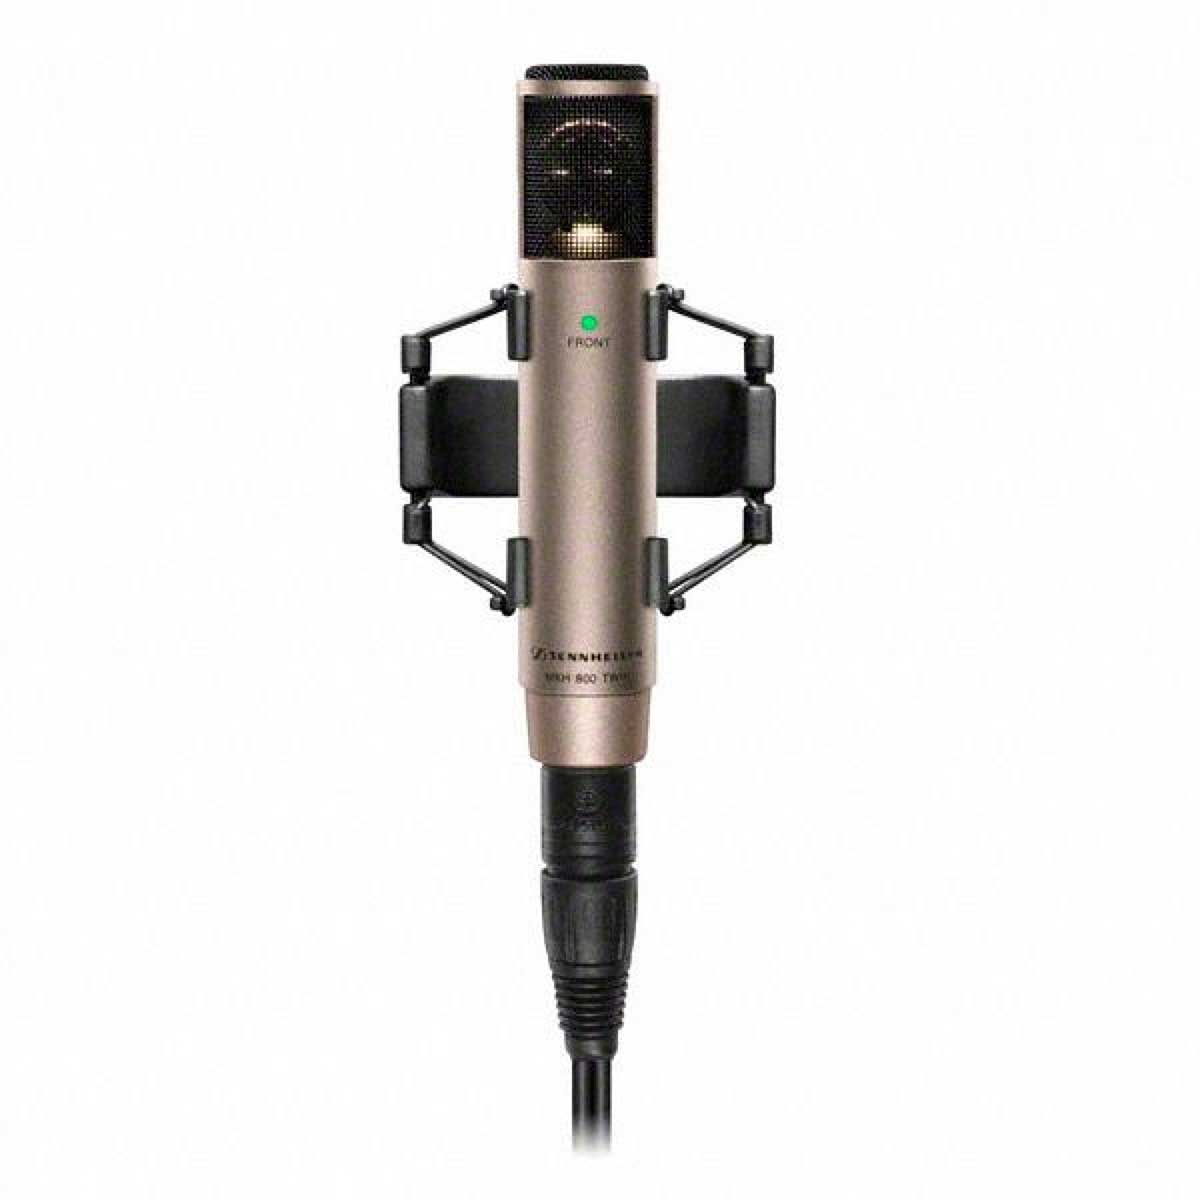 Sennheiser MKH 800 TWIN Universal Studio Condenser Microphone